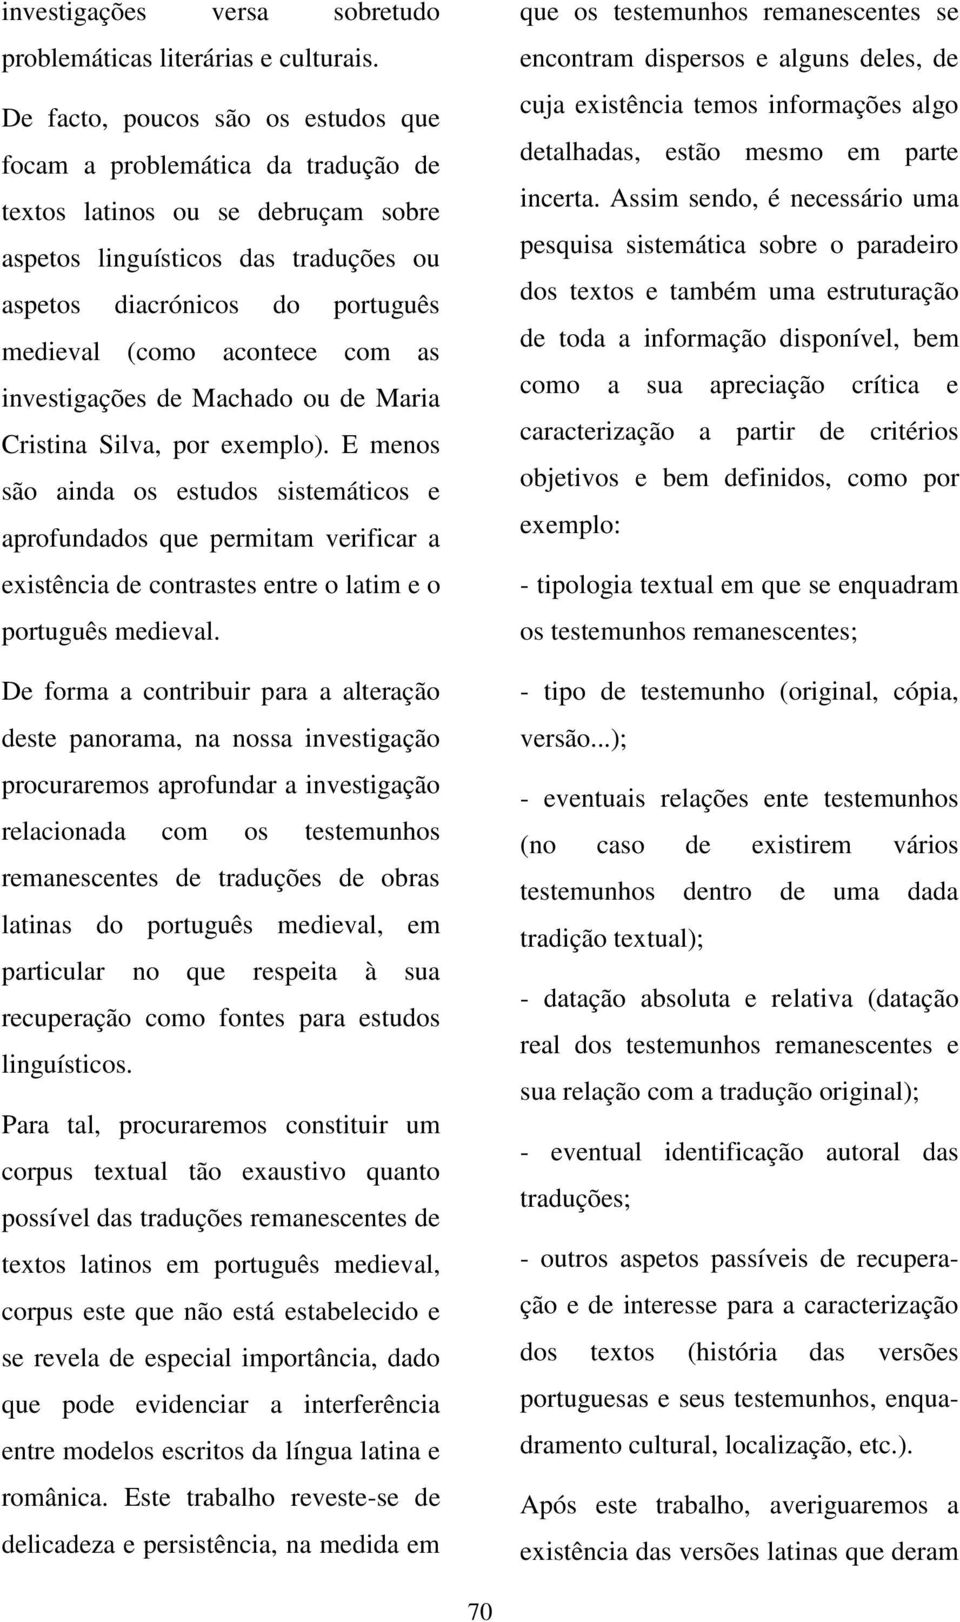 acontece com as investigações de Machado ou de Maria Cristina Silva, por exemplo).